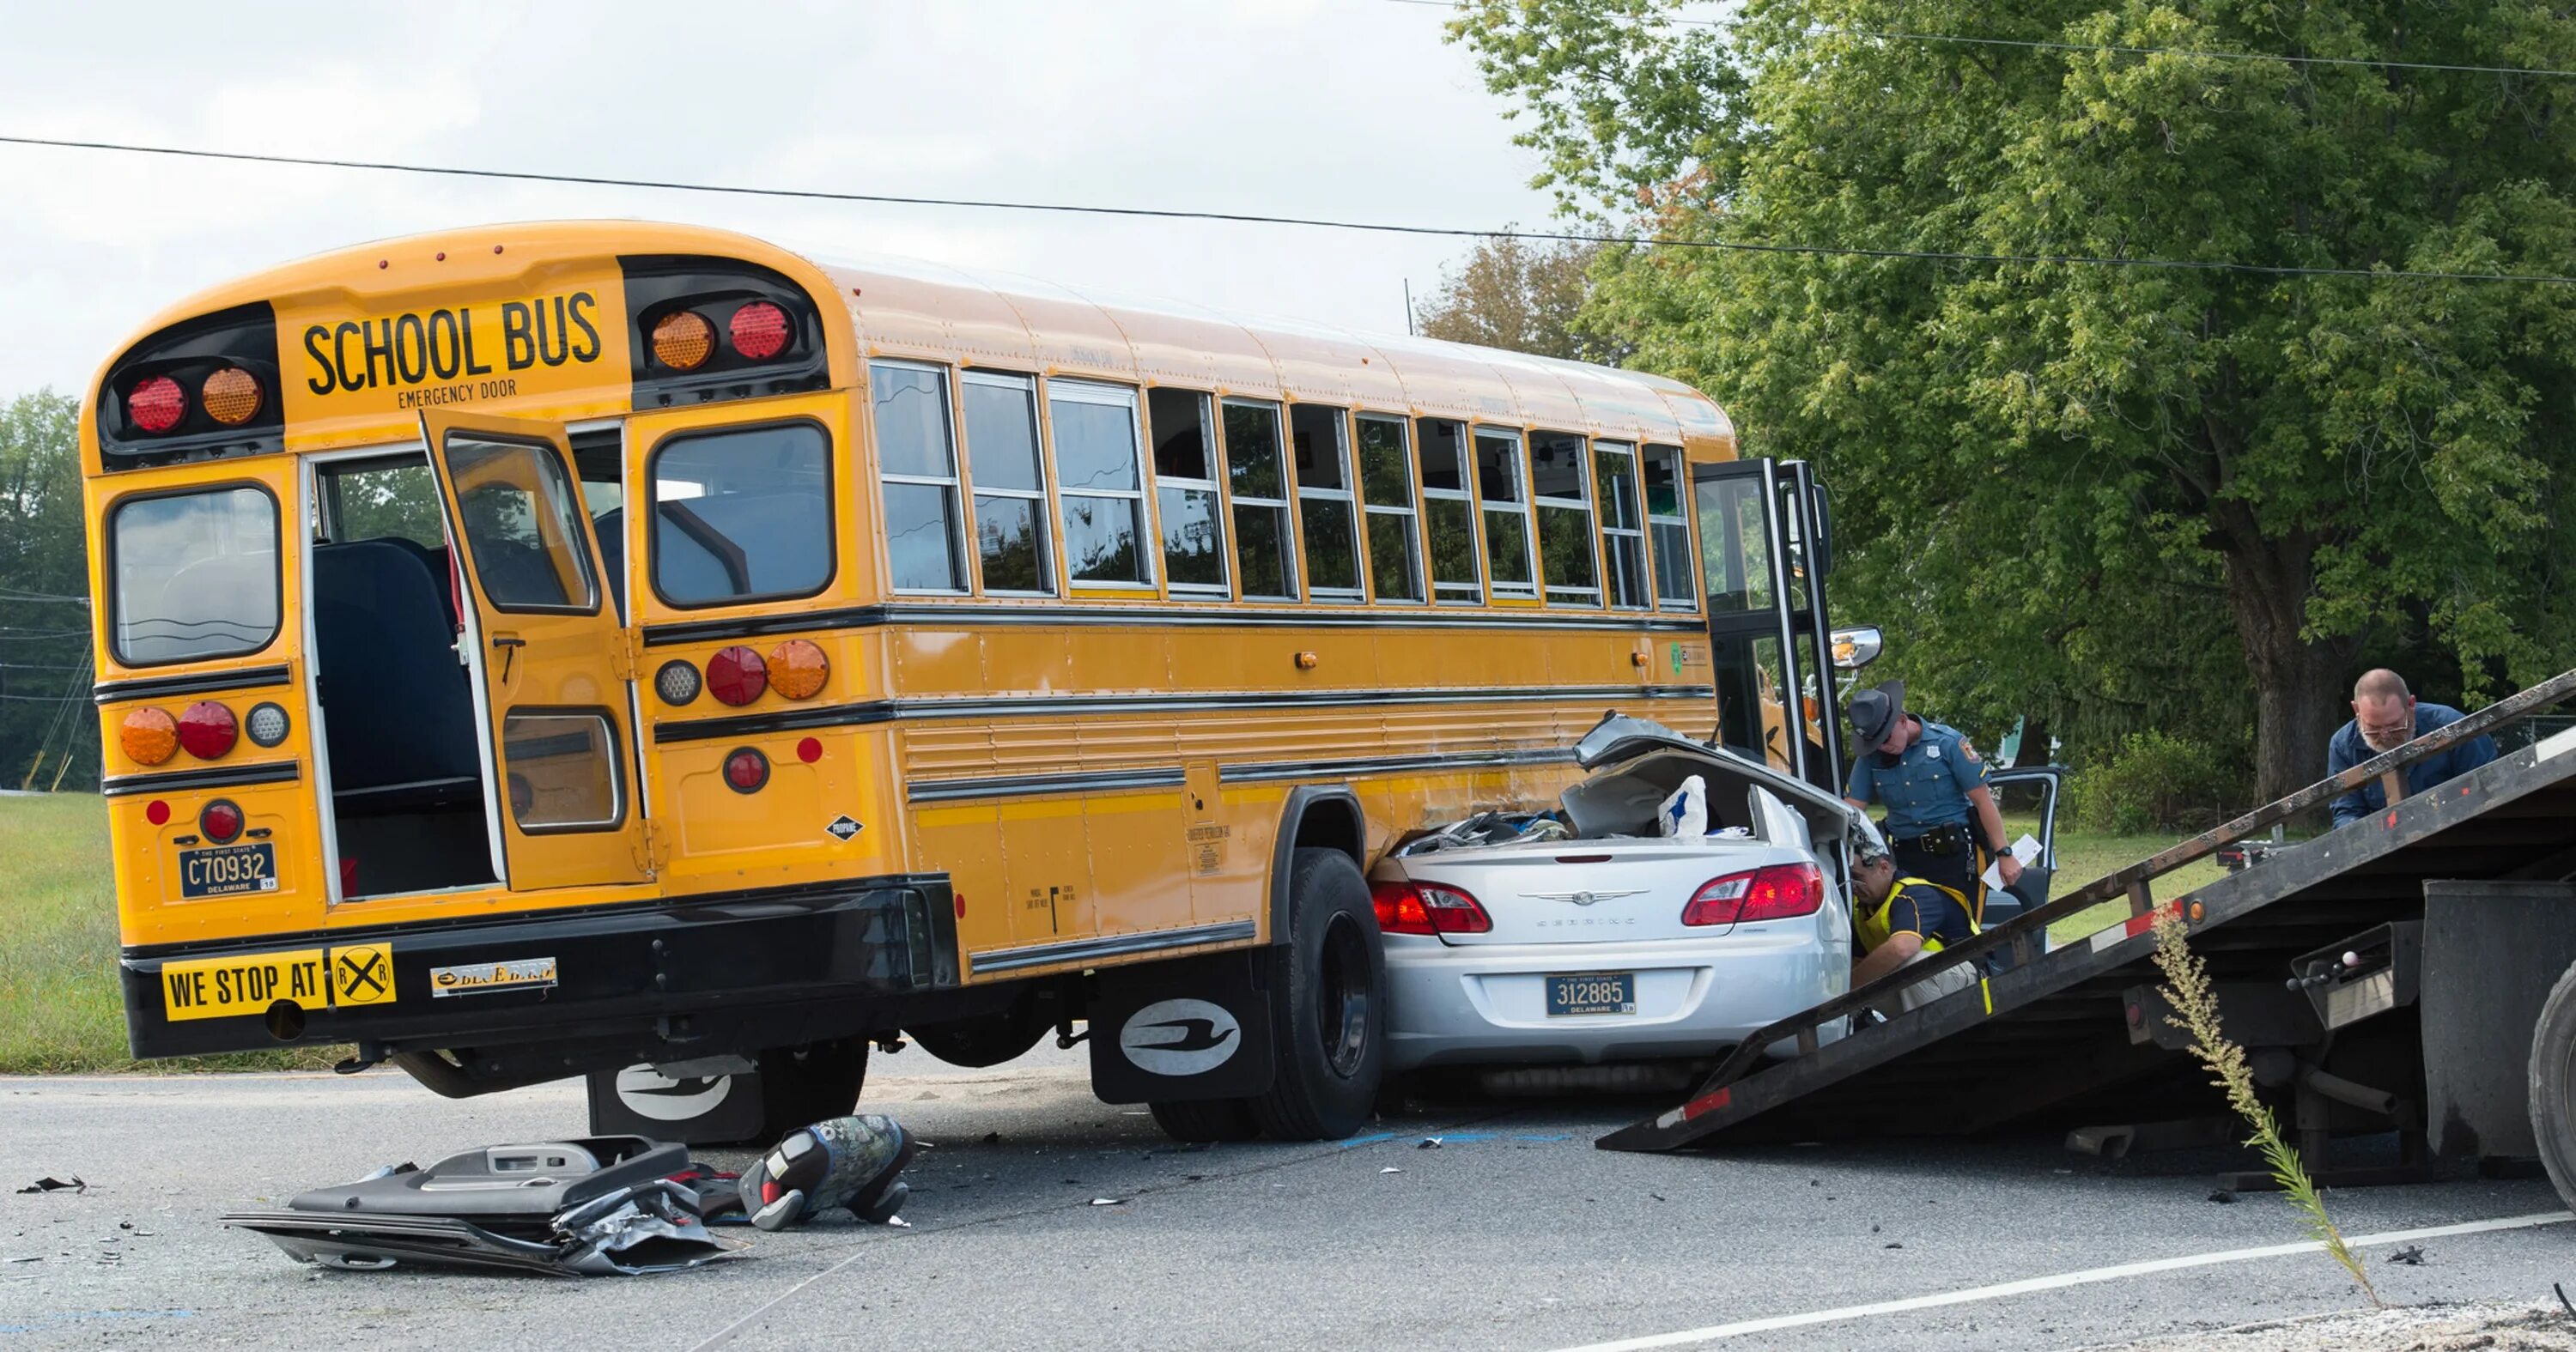 Автобус разбили. Разбитый школьный автобус. Брошенный школьный автобус. Американский школьный автобус разбит. Старый школьный автобус.